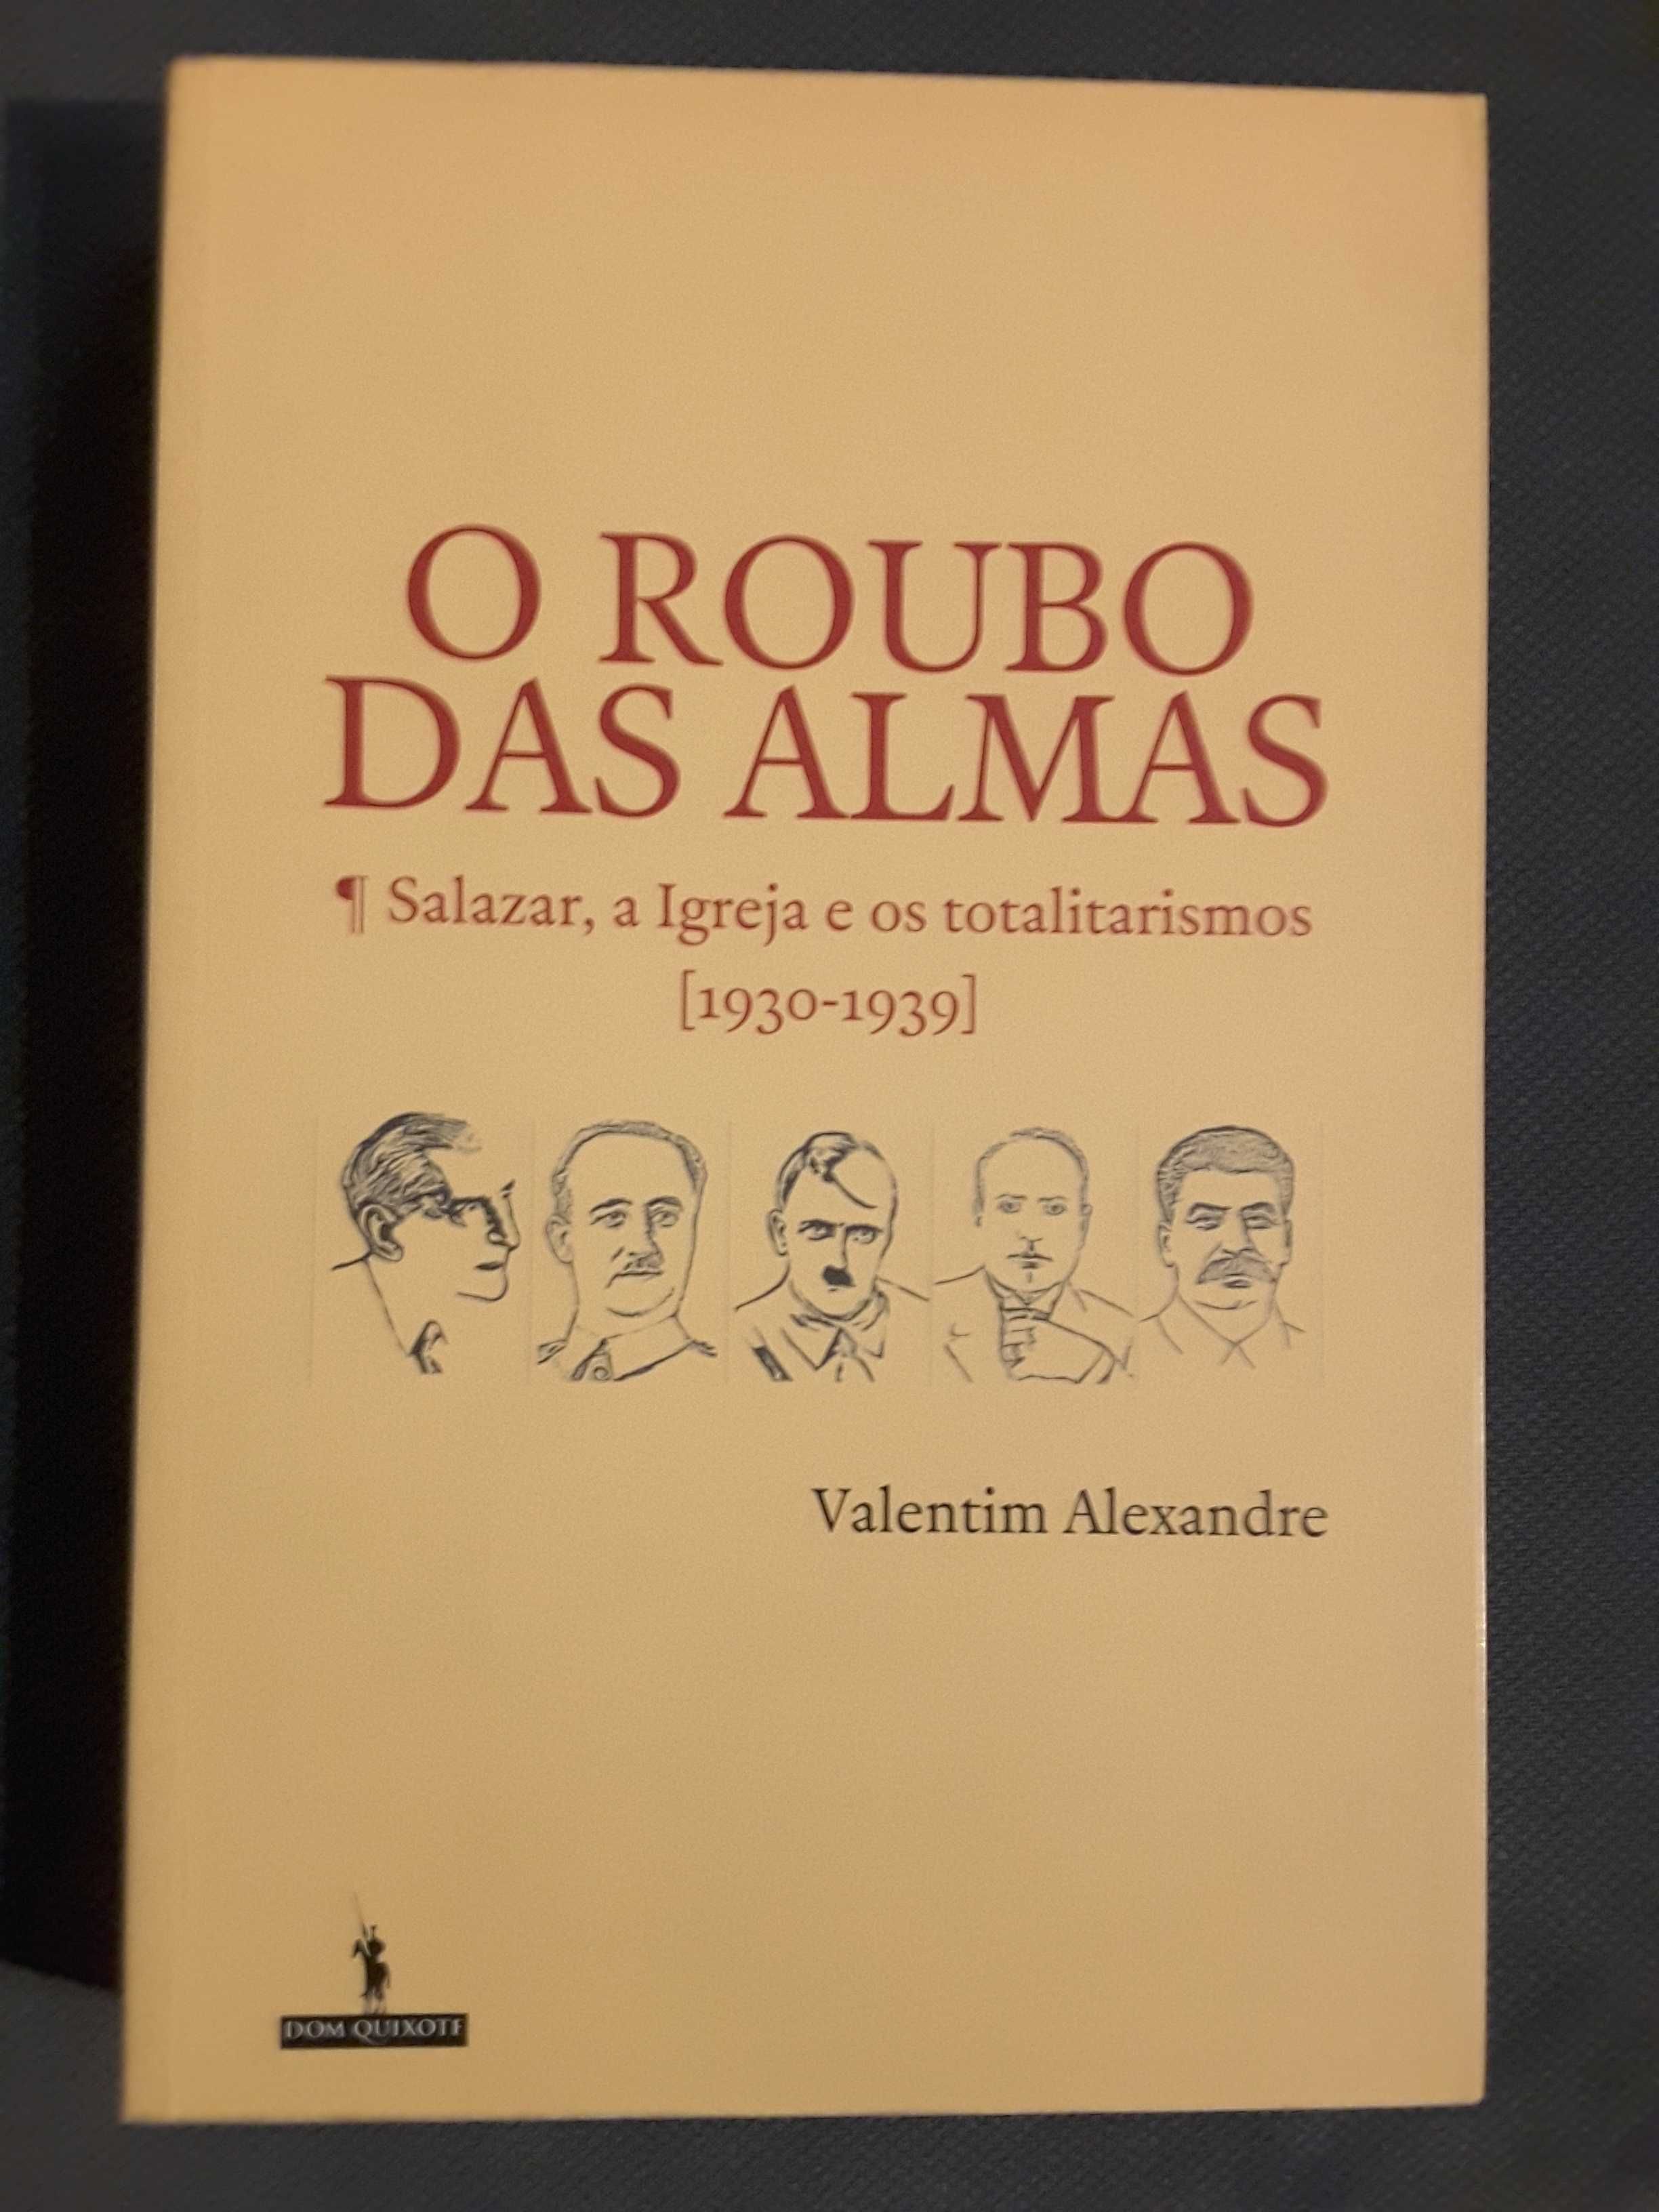 O Roubo das Almas/Cartas de Salazar/Luiz Teixeira: Roteiro Sentimental